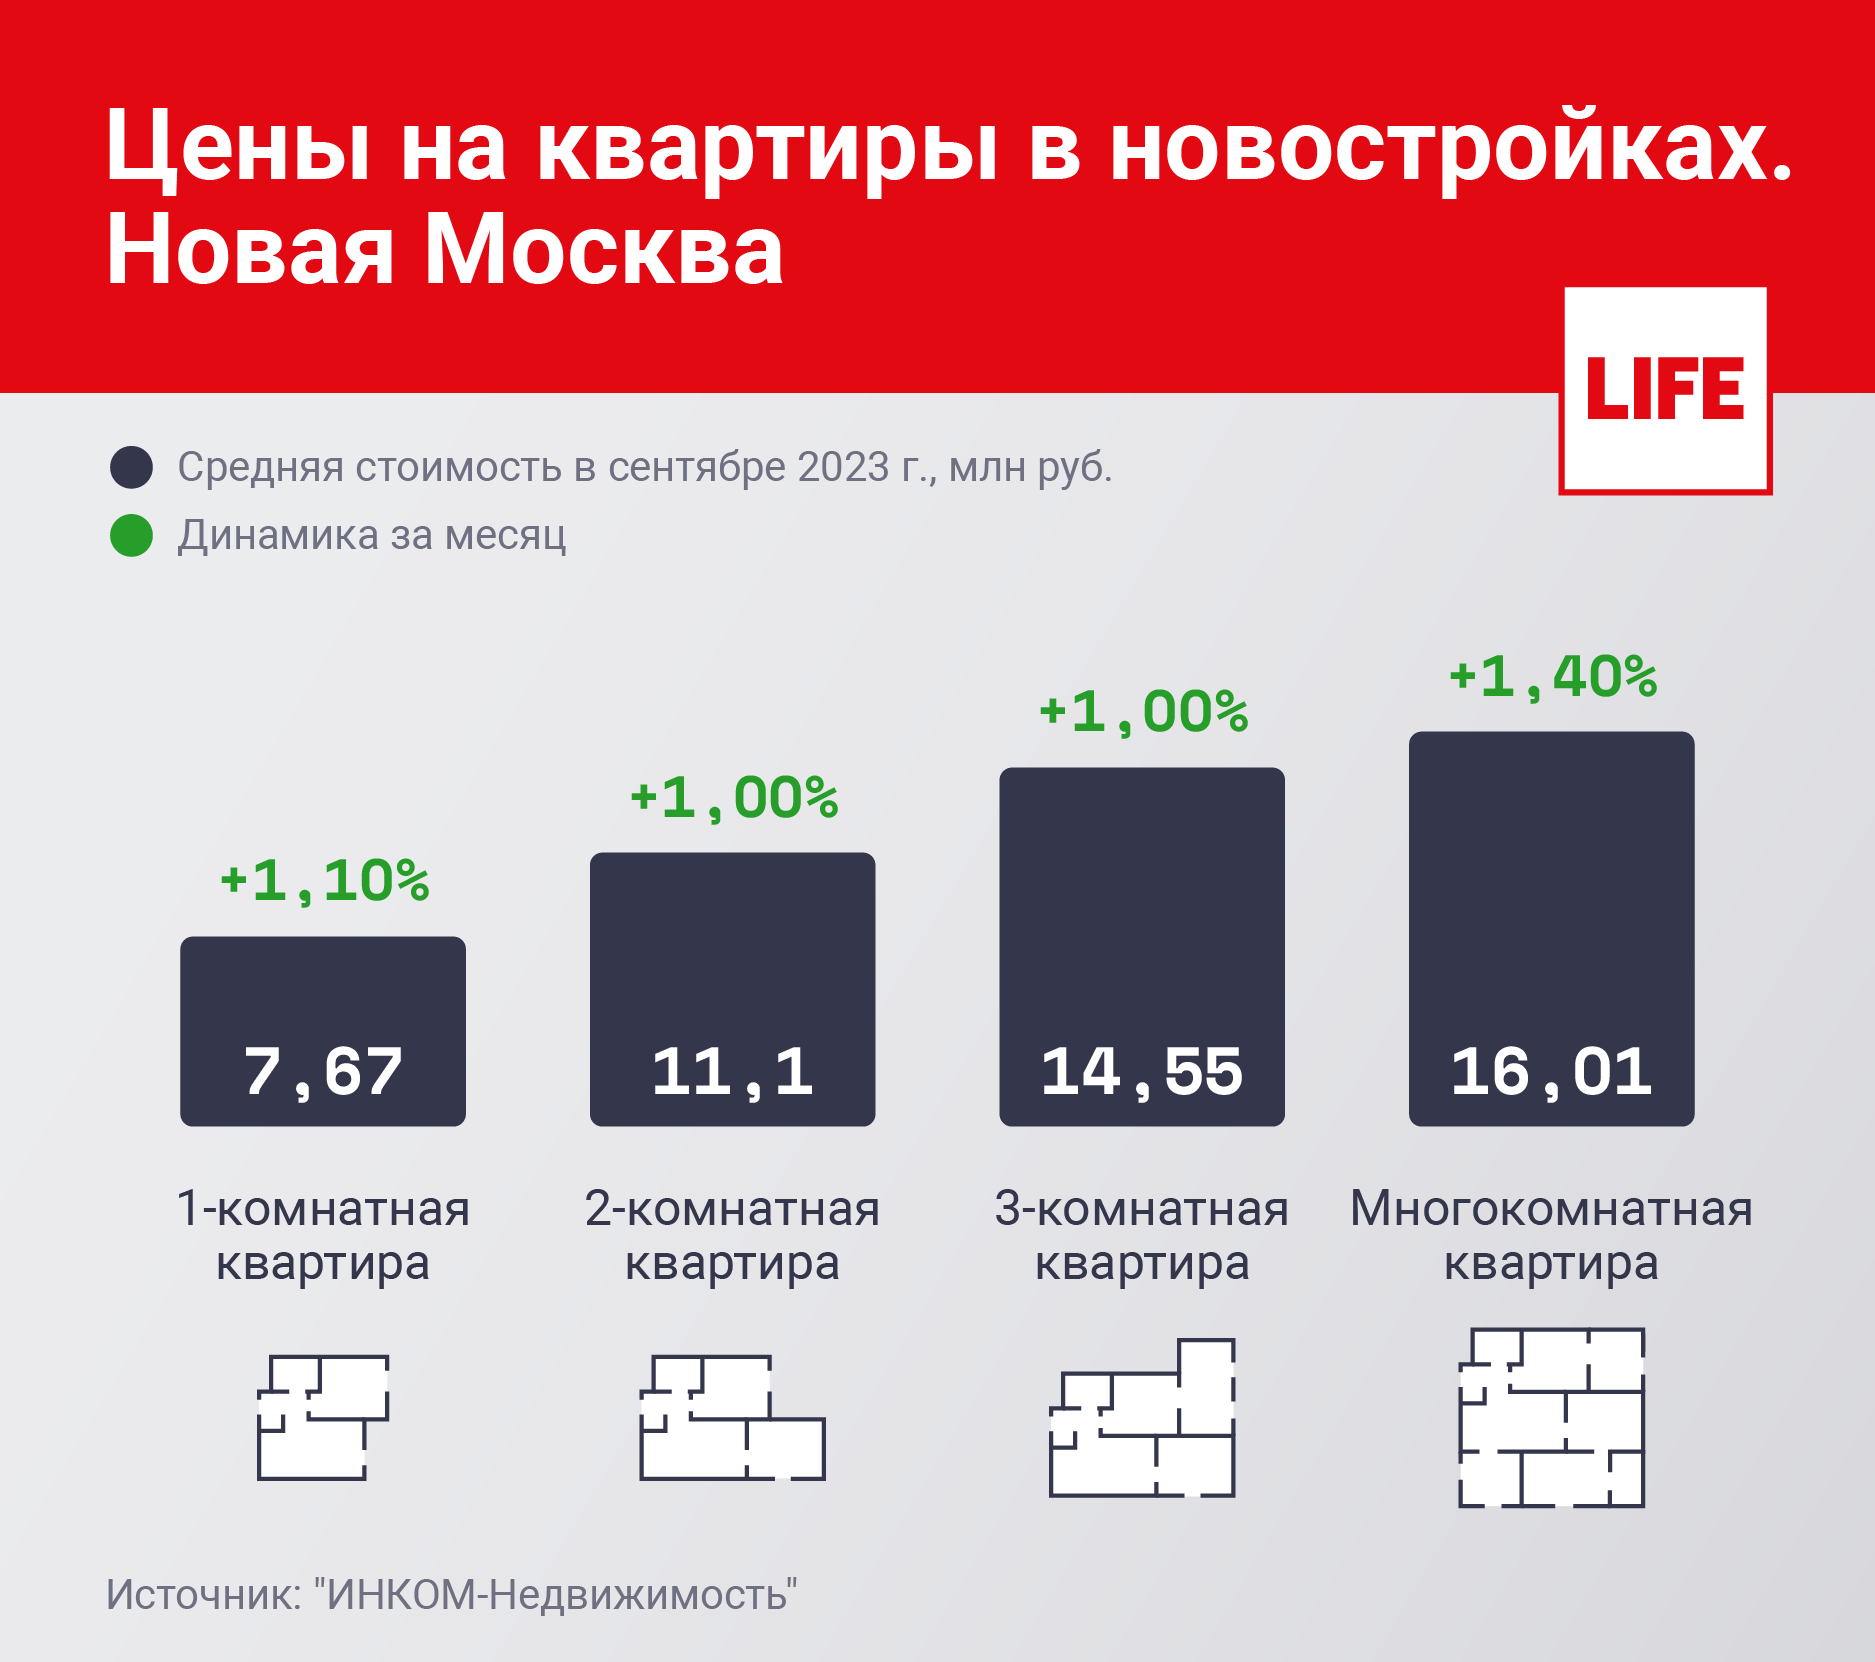 Цены на квартиры в новостройках. Новая Москва. Инфографика © LIFE